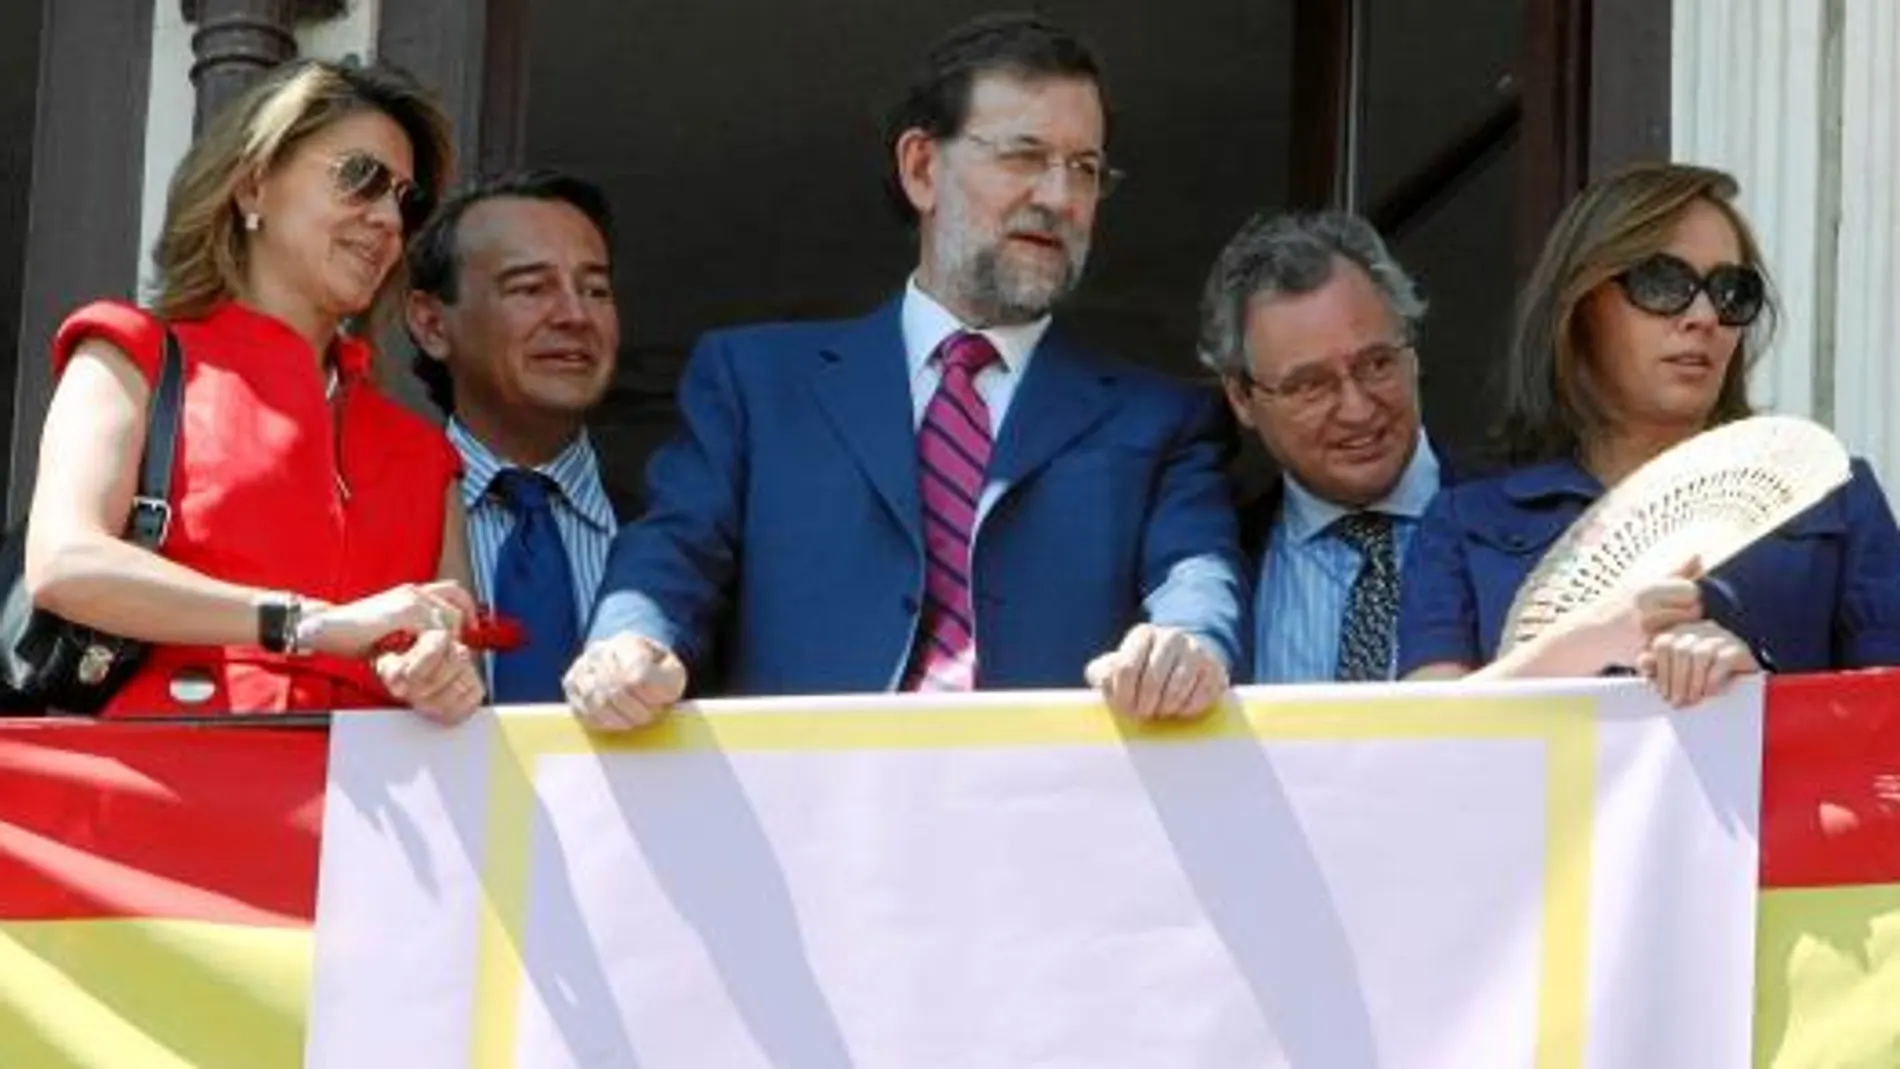 De izquierda a derecha, Cospedal, el senador Agustín Conde, Mariano Rajoy, Ignacio López del Hierro y Elvira Fernández